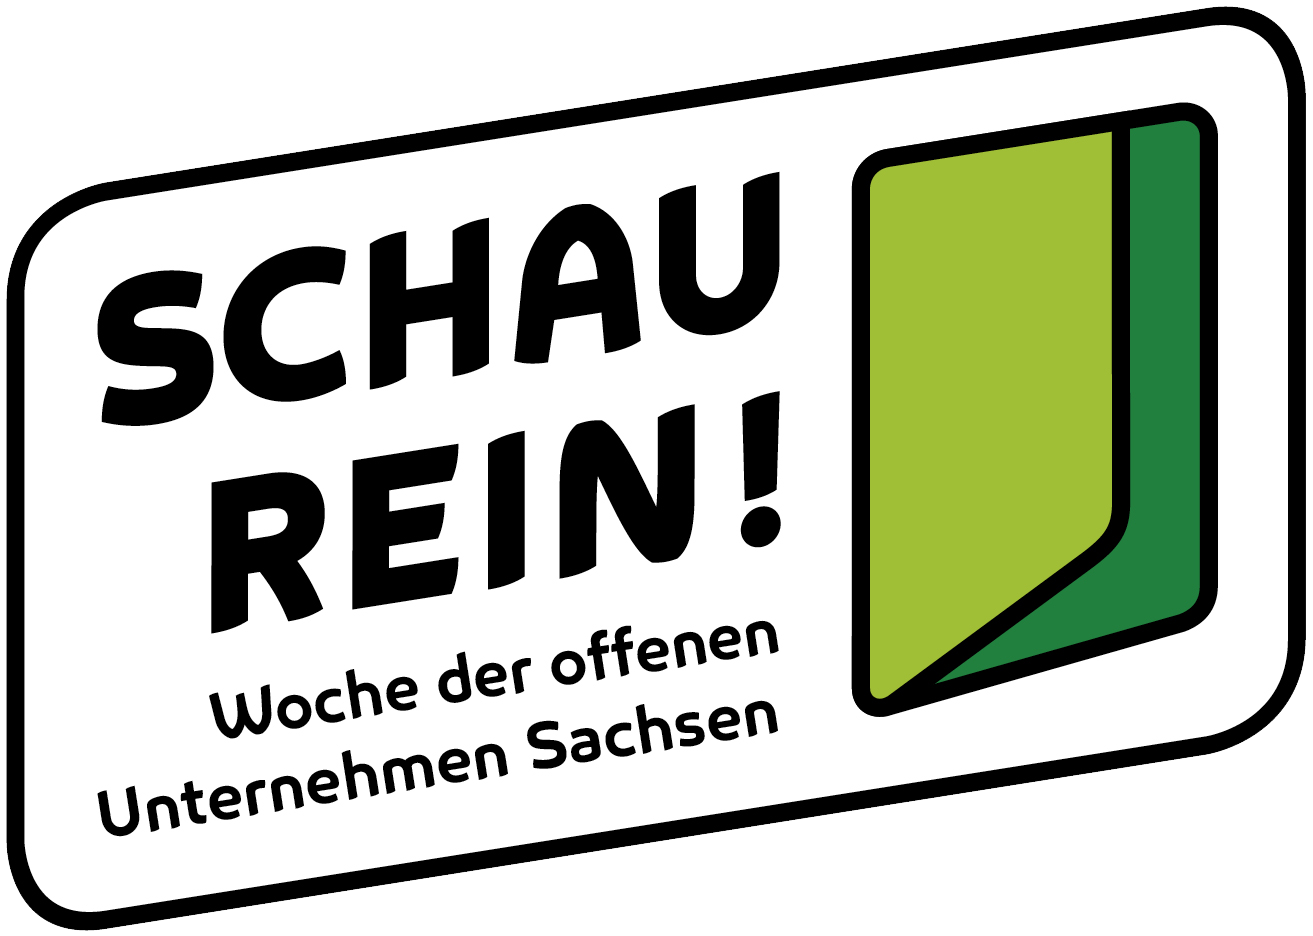 SCHAU REIN! - Woche der offenen Unternehmen Sachsen